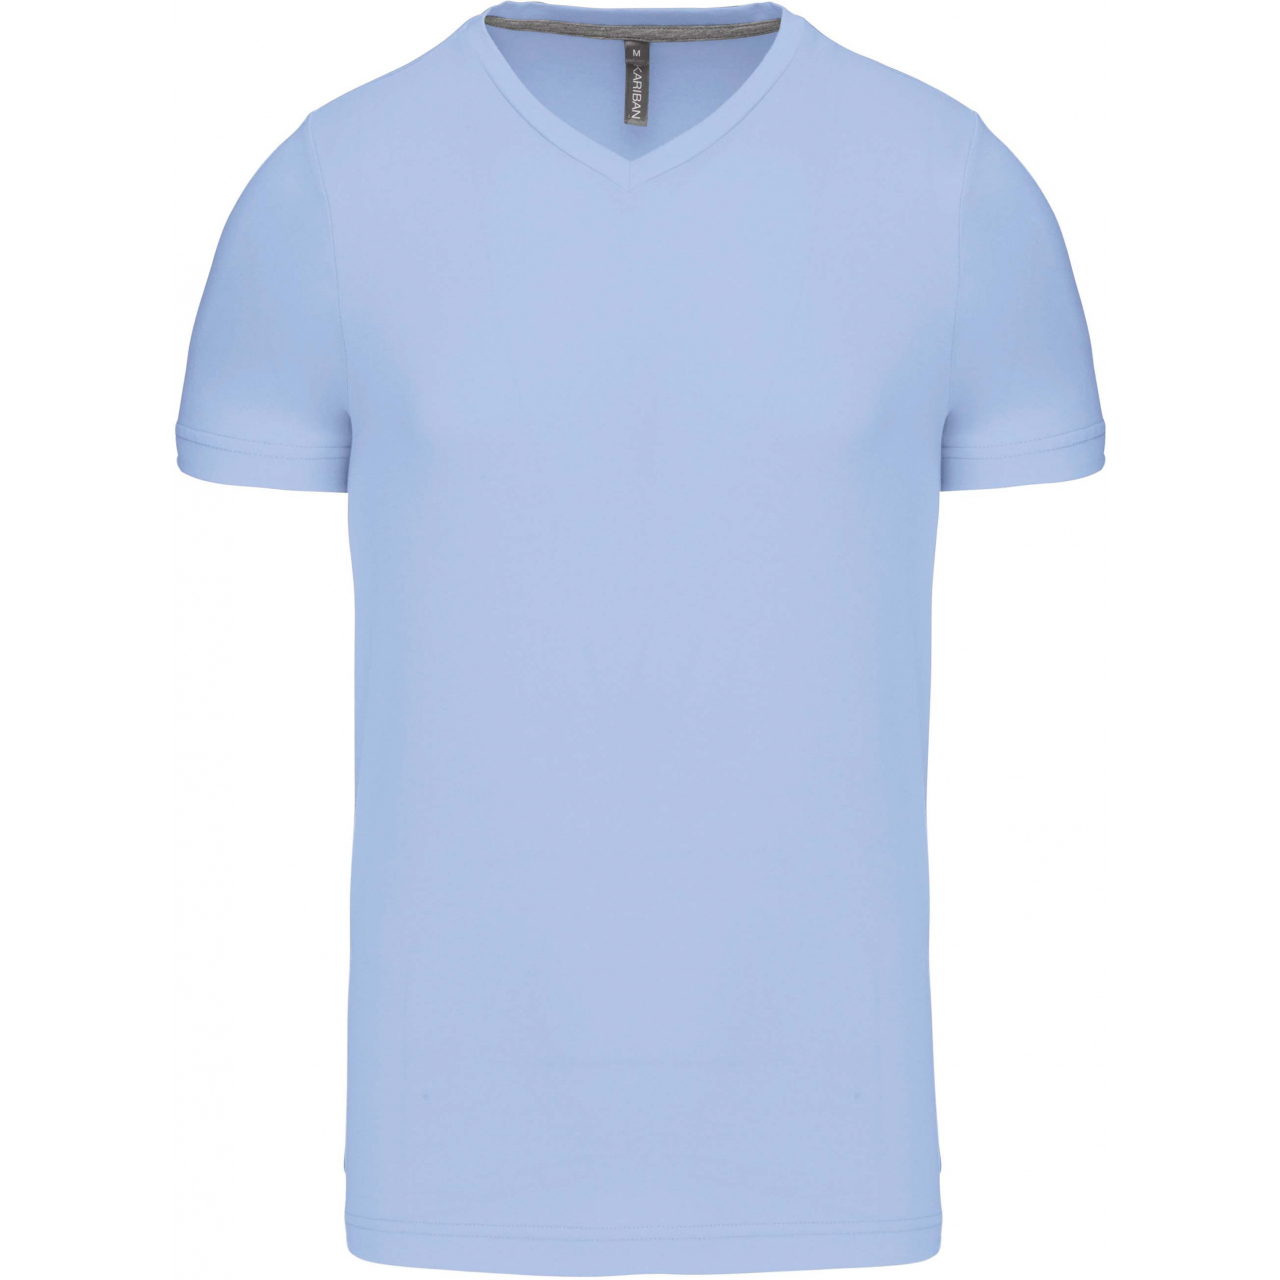 Pánské tričko Kariban krátký rukáv V-neck - světle modré, L